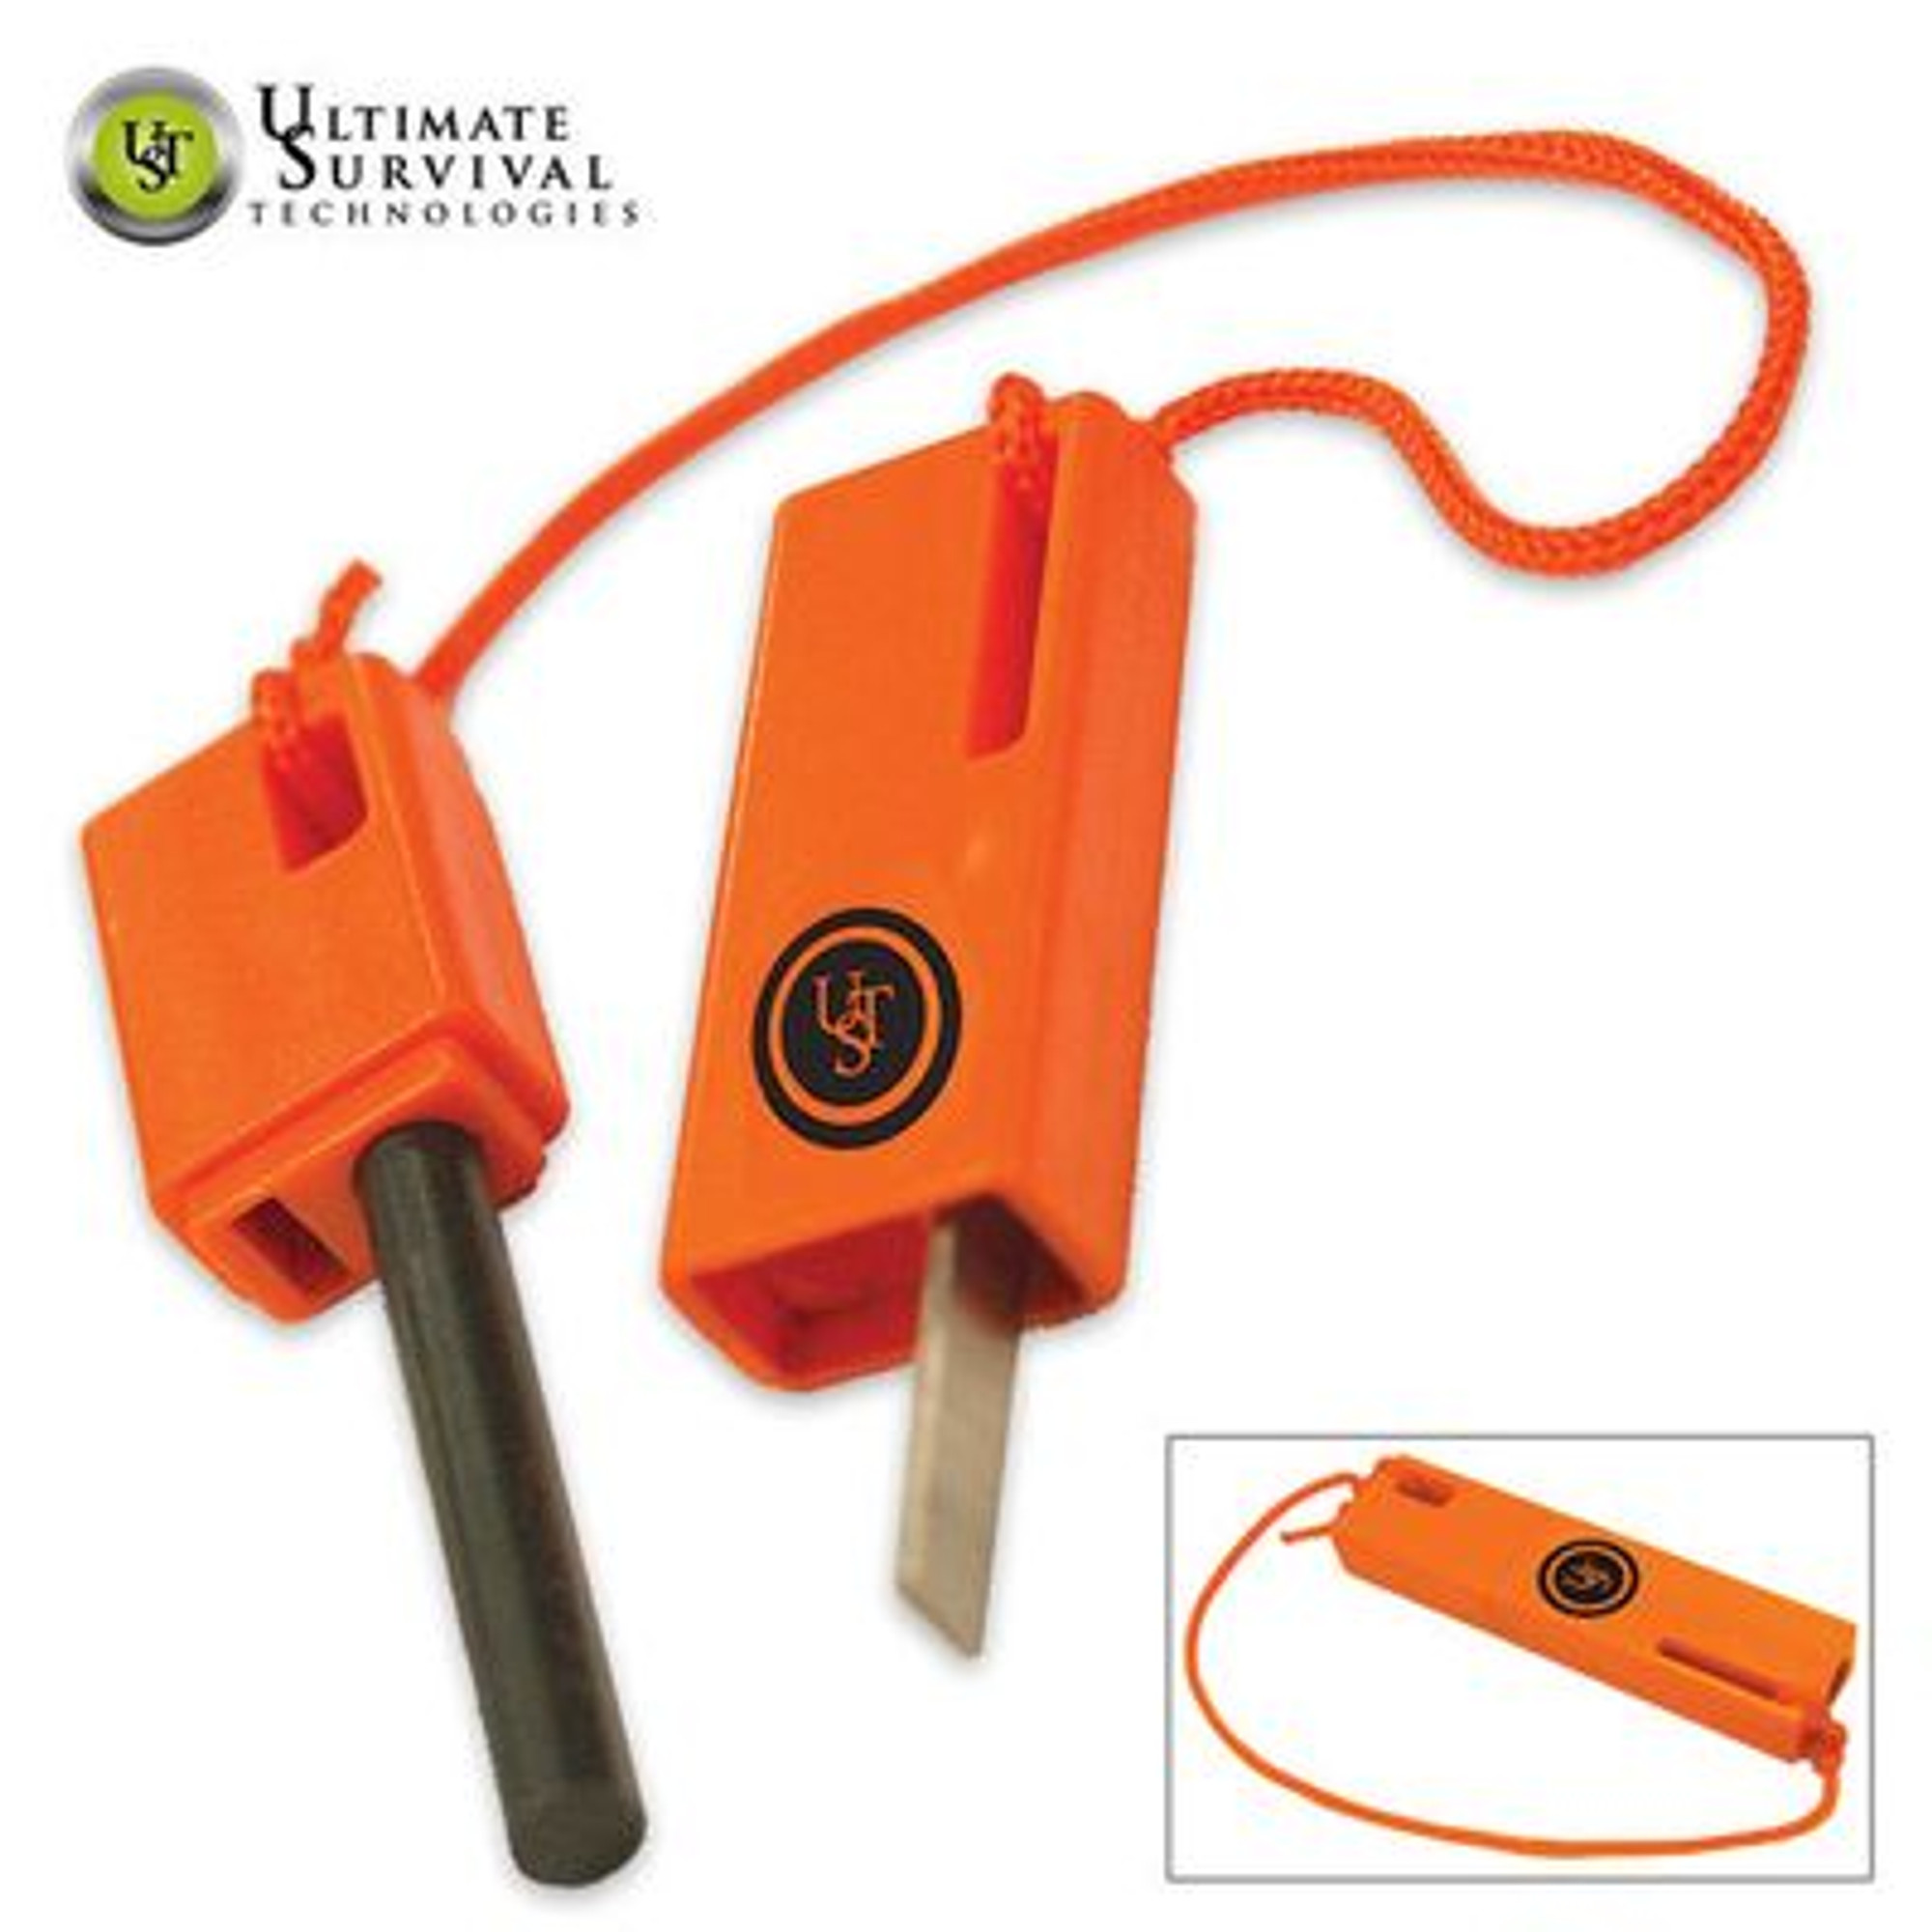 UST SparkForce Flint Based Fire Starter - Orange